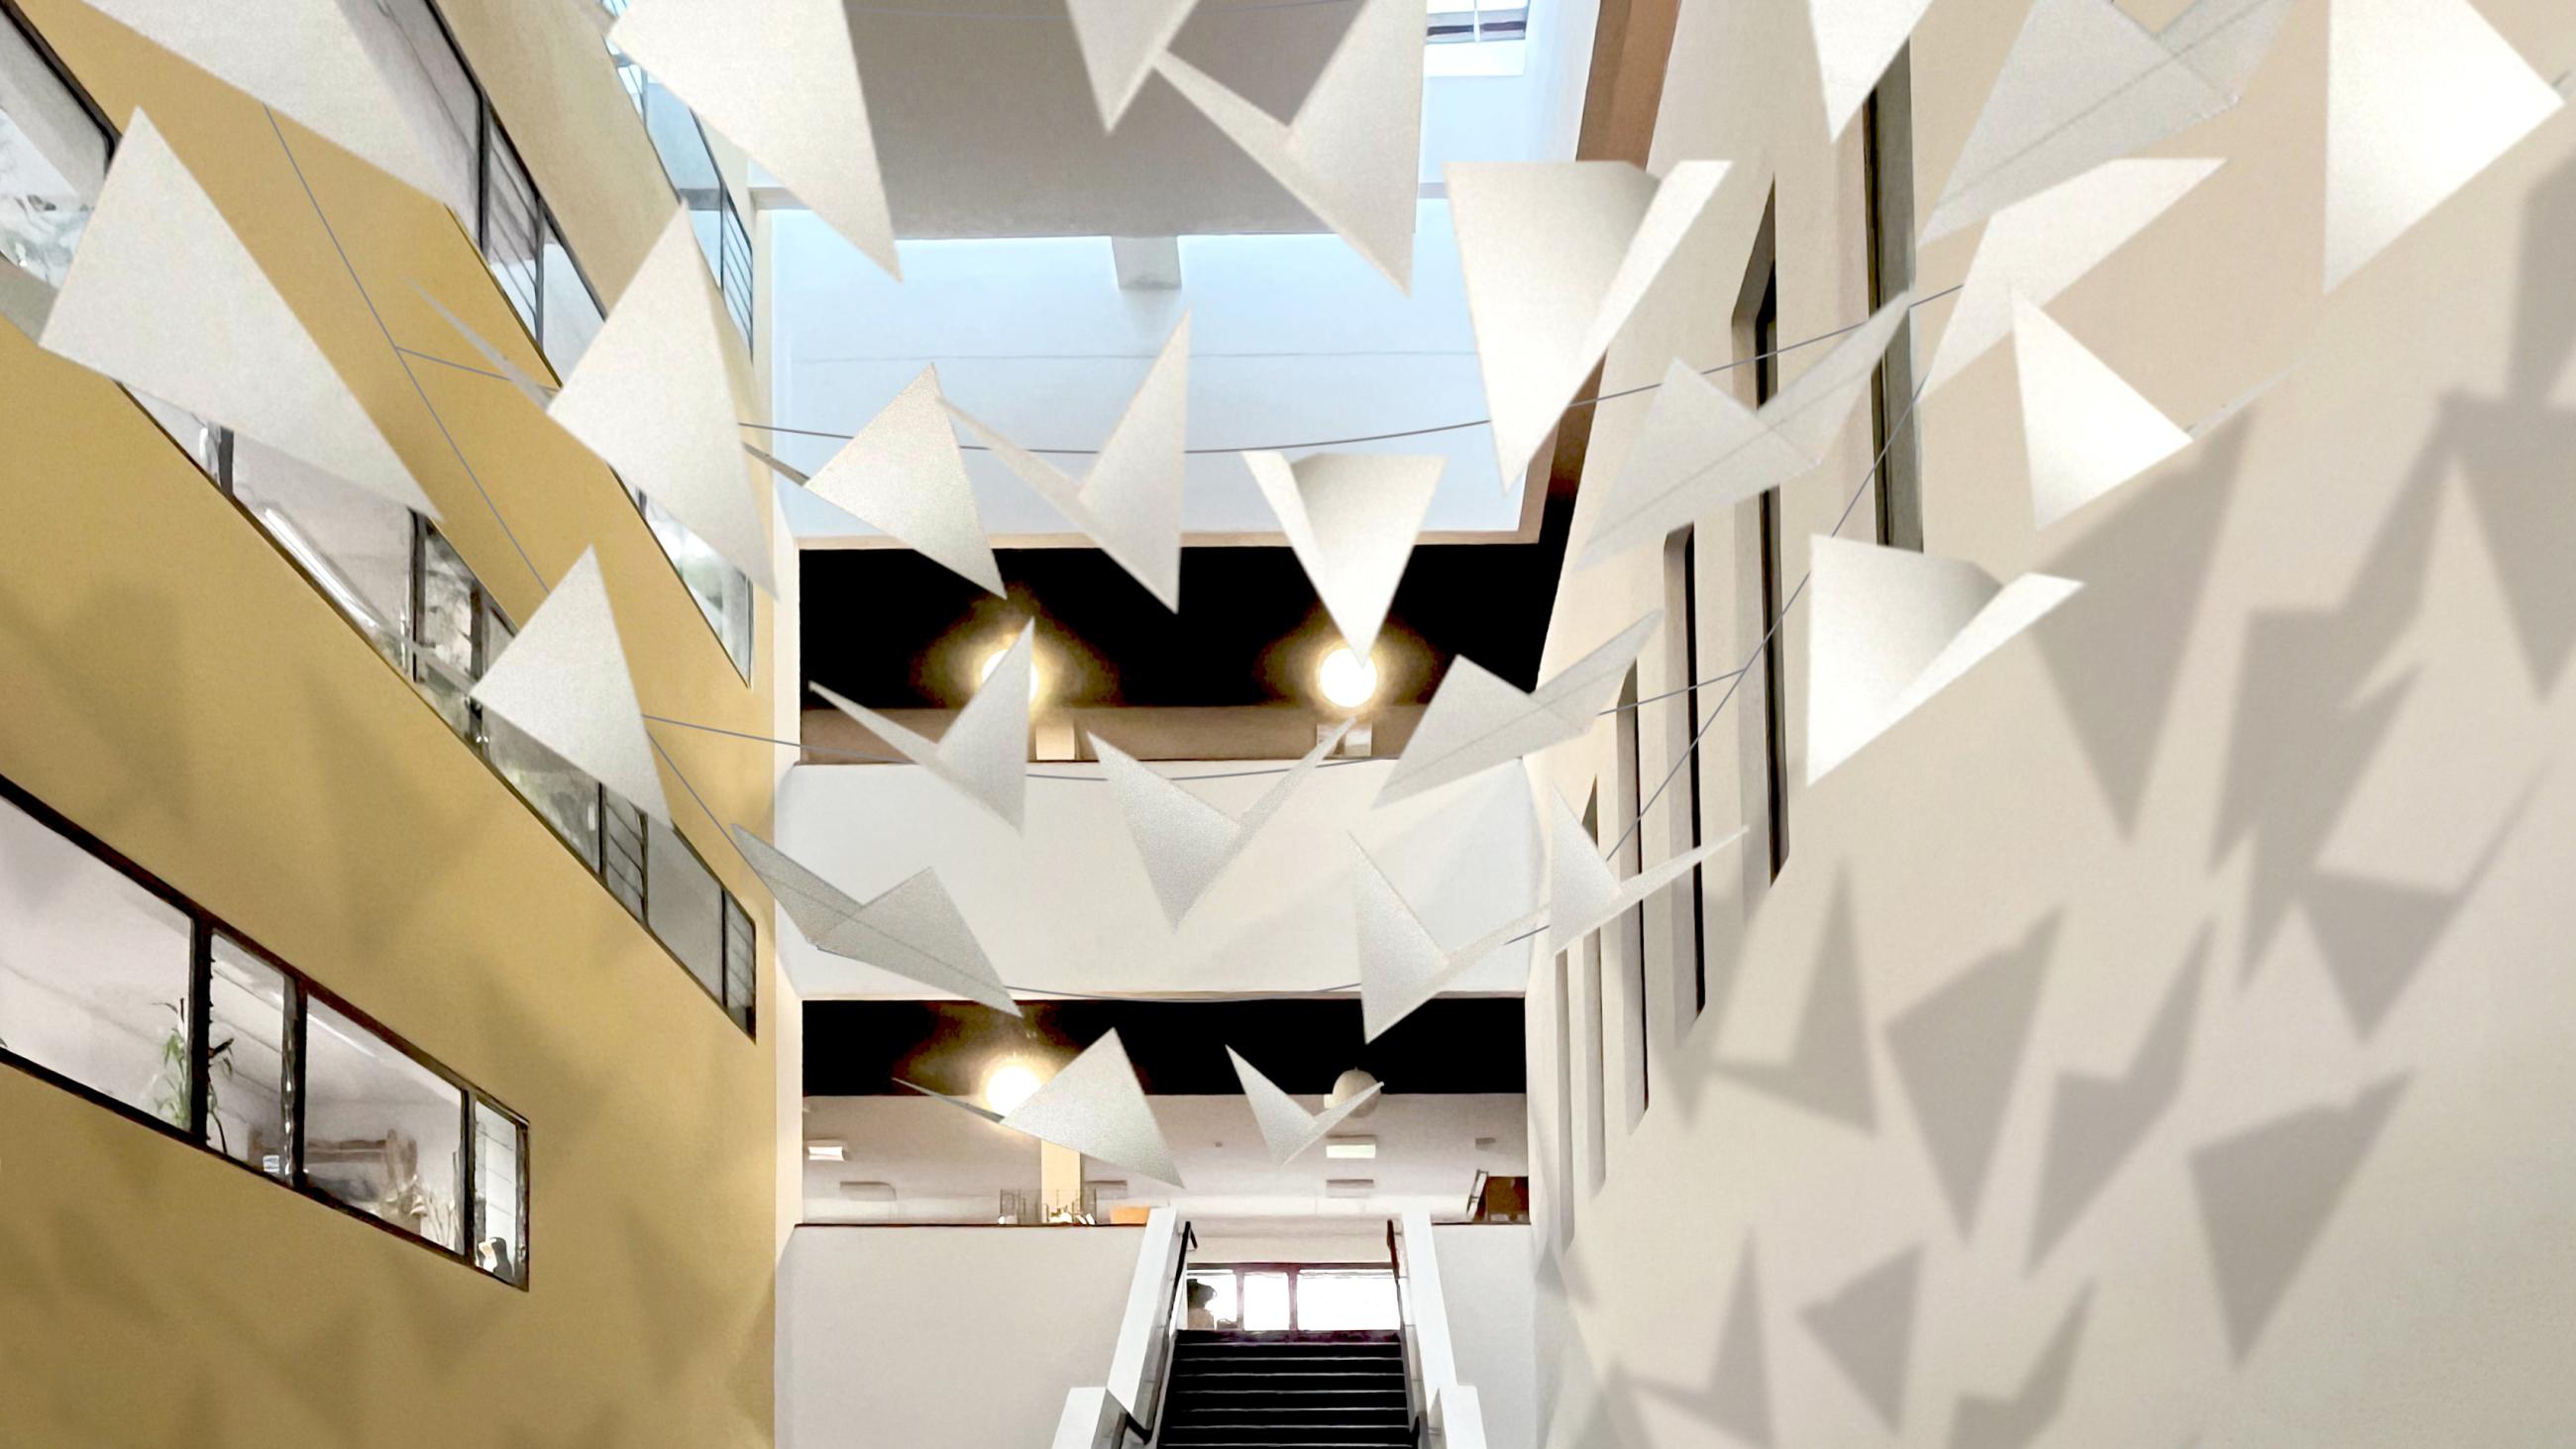 Treppe in der Bibliothek mit darüber hängenden Girlanden in geometrischen Formen, die einen Schatten an die Wand werfen